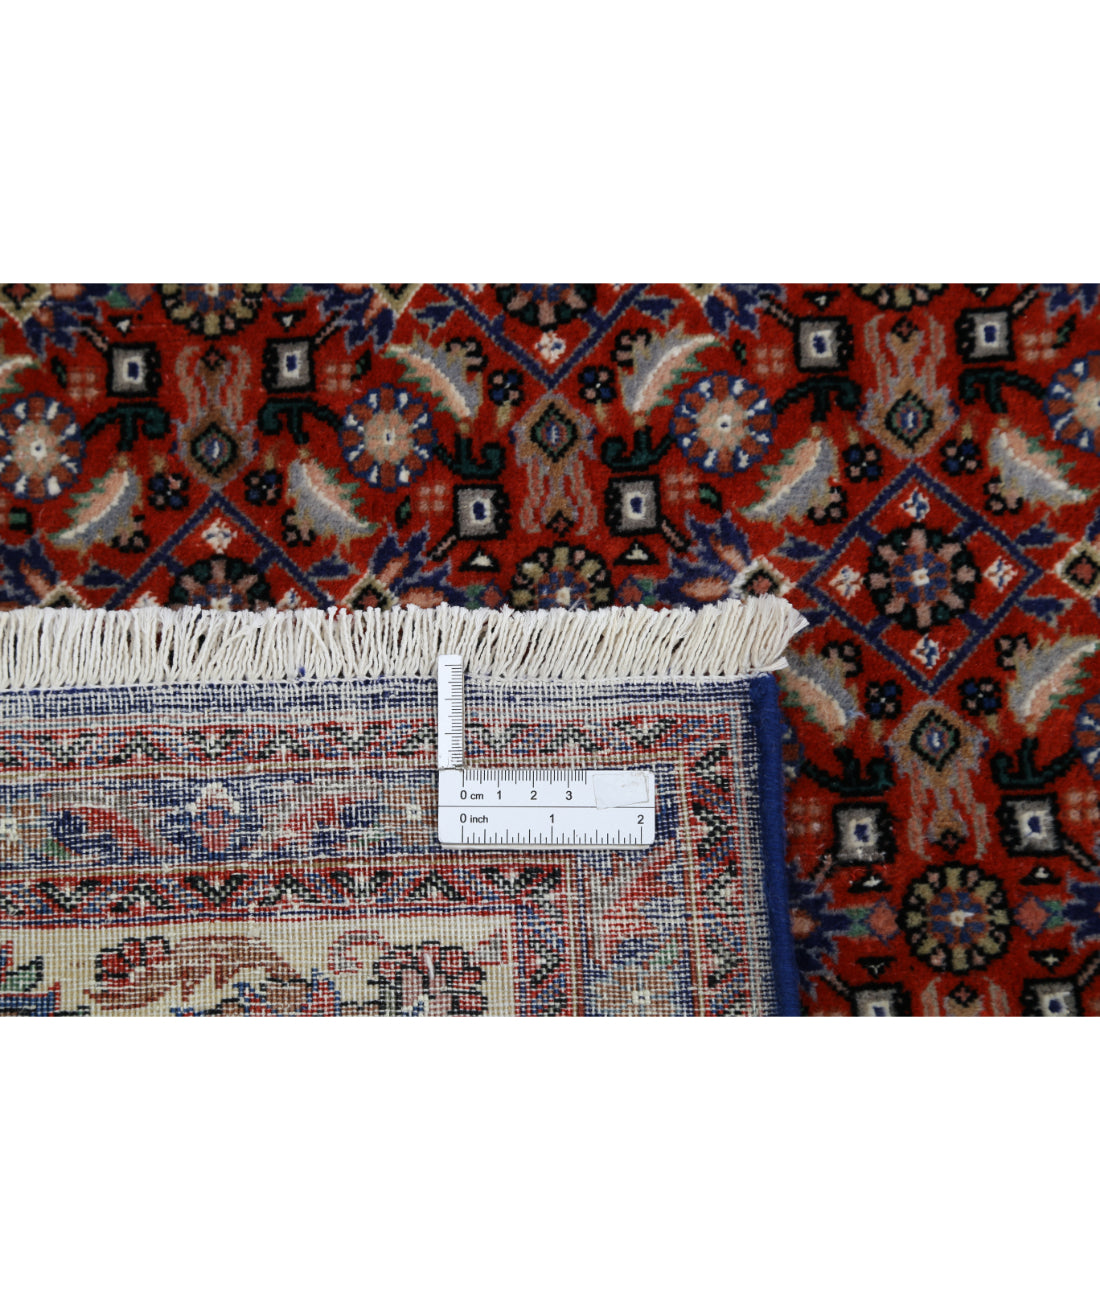 Hand Knotted Persian Bijar Wool & Silk Rug - 6'7'' x 9'8'' 6'7'' x 9'8'' (198 X 290) / Red / Ivory